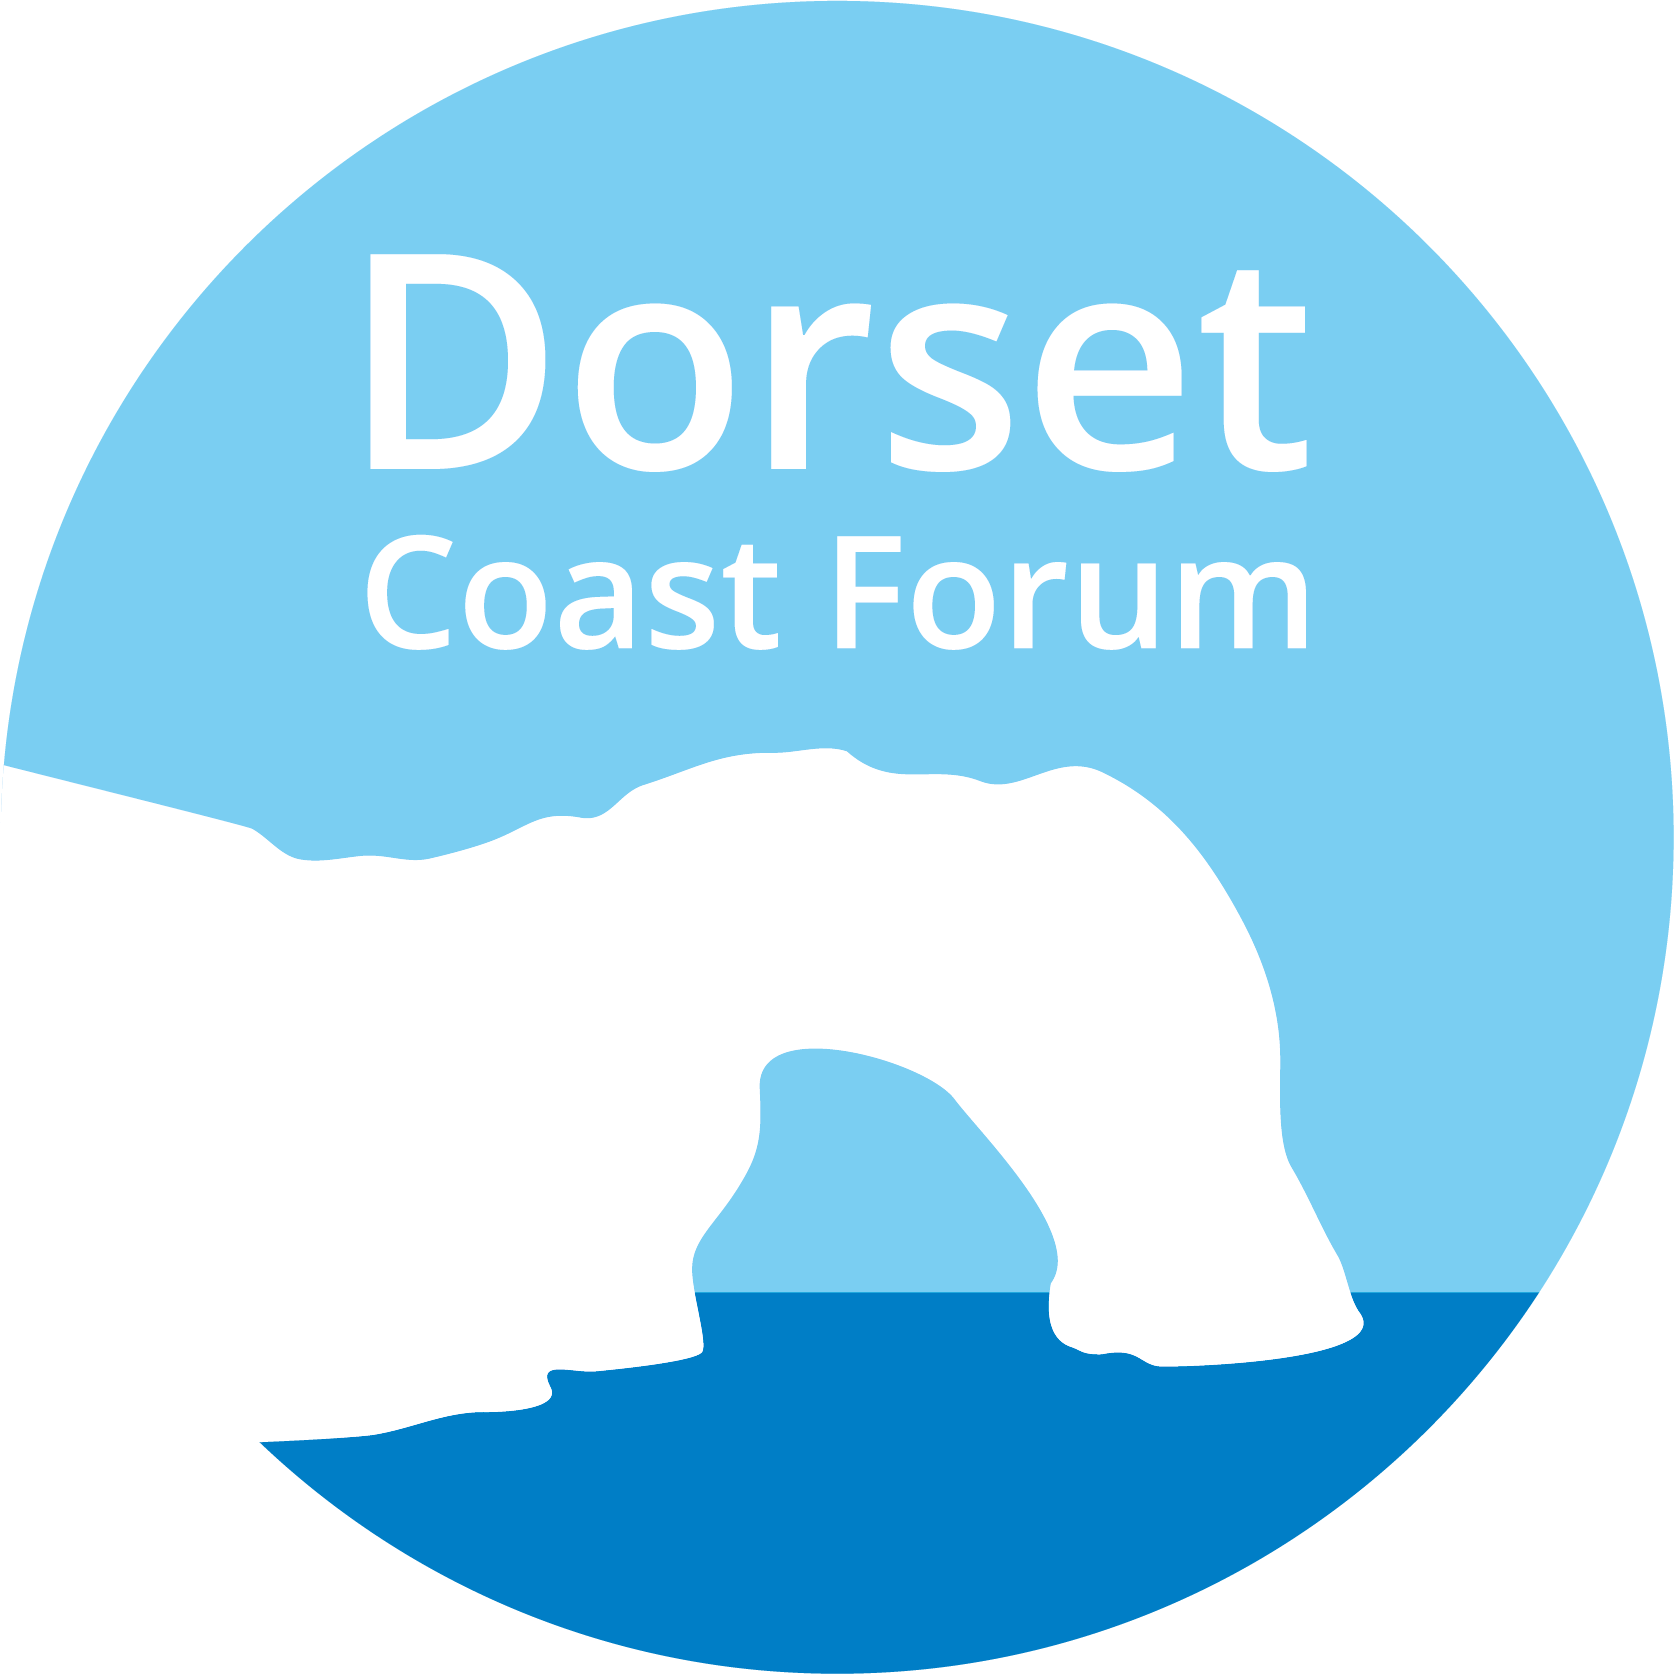 Team member, Dorset Coast Forum